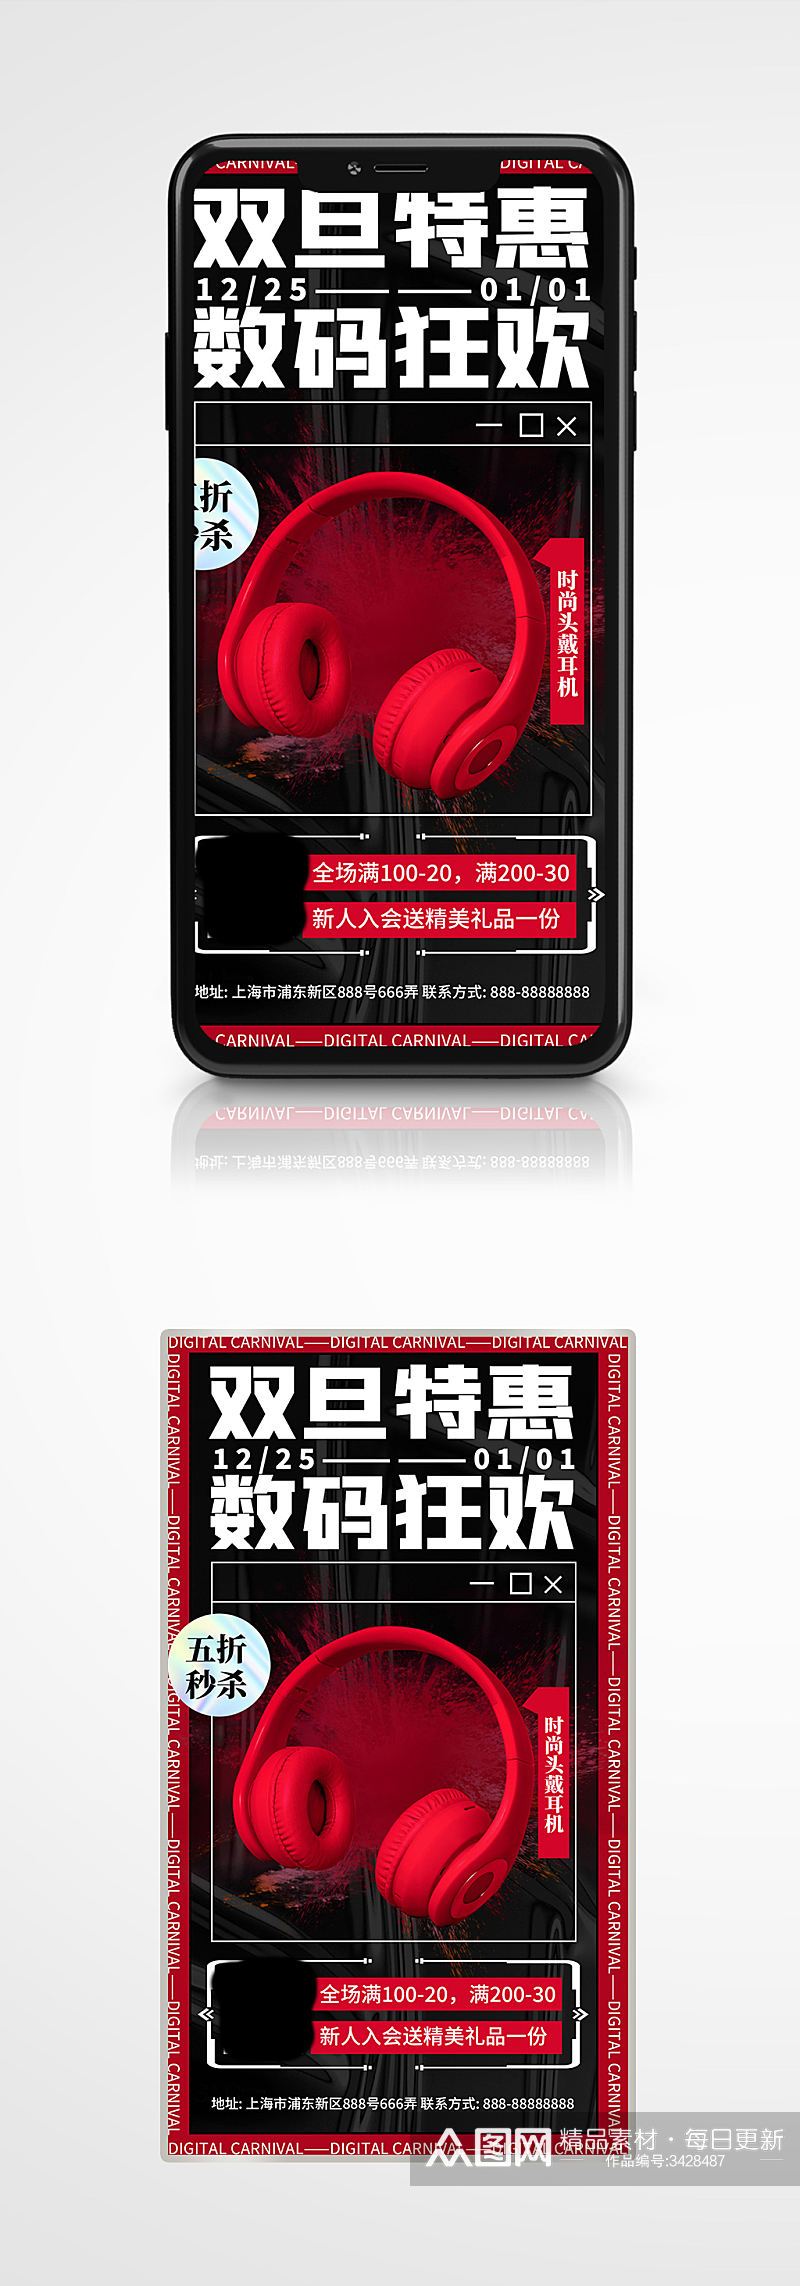 双旦特惠耳机促销酸性海报营销红黑素材